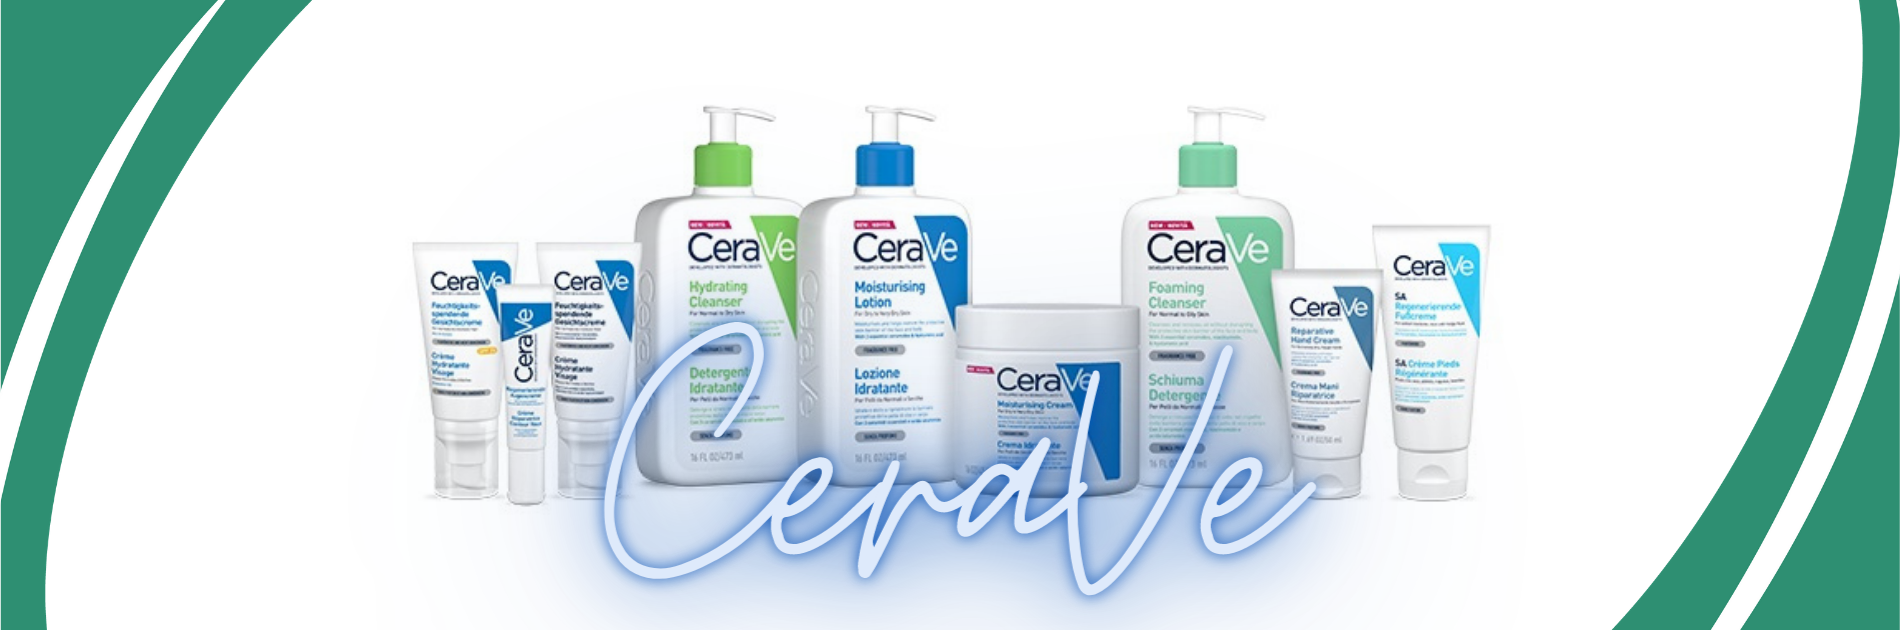 CeraVe: dratanti per ripristinare la barriera naturale della pelle. Le formule CeraVe contengono 3 ceramidi essenziali per il benessere della pelle.